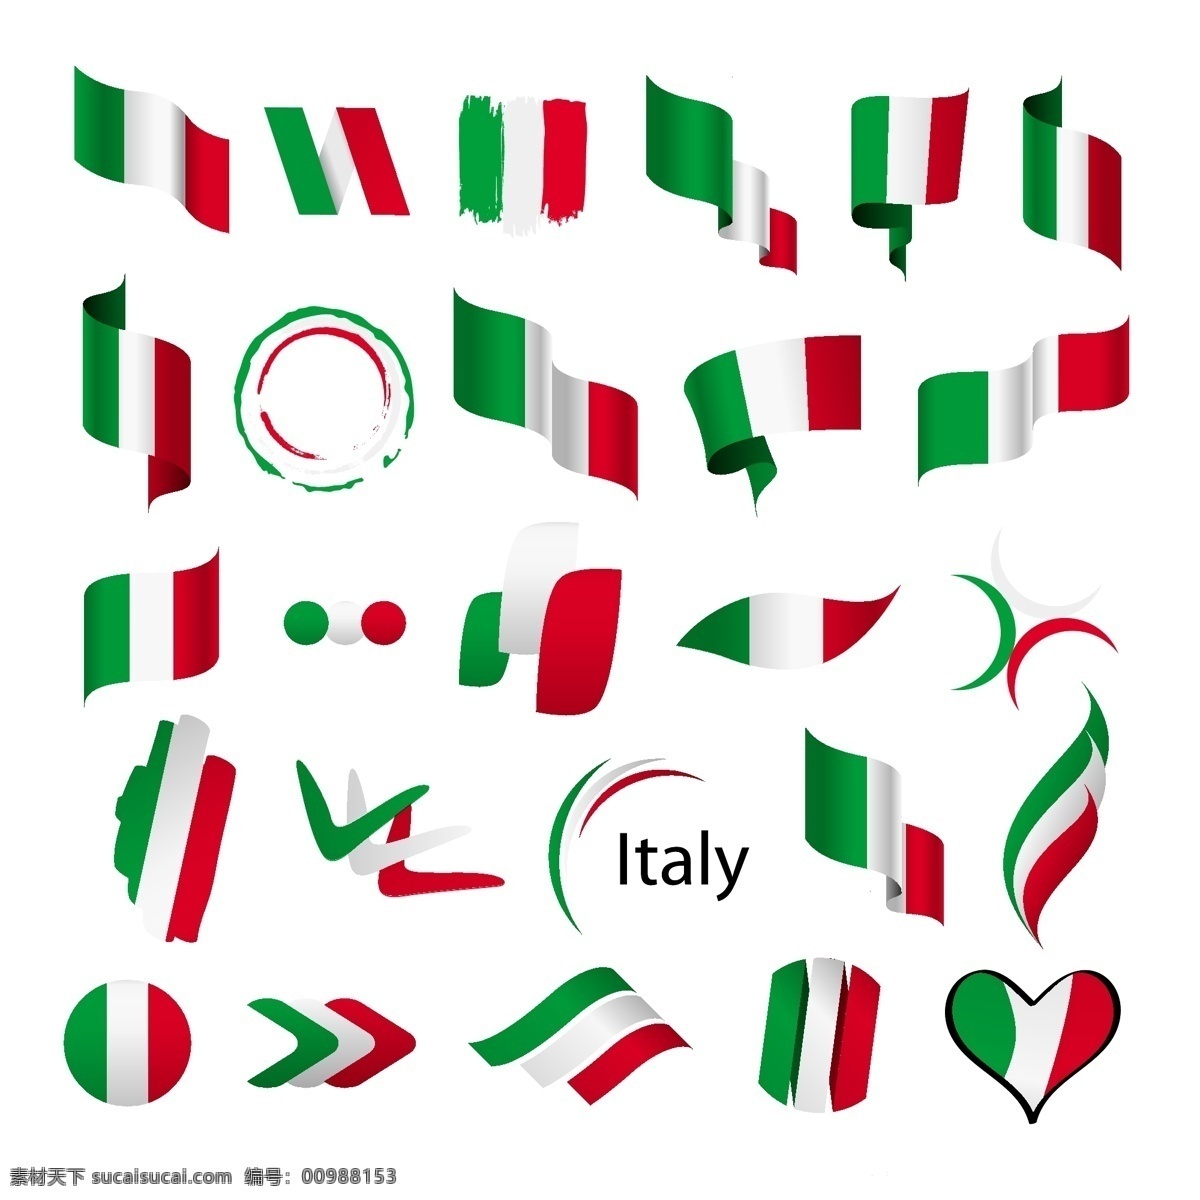 意大利设计 意大利国旗 意大利 意大利图标 意大利标志 意大利文化 意大利风情 标志图标 其他图标